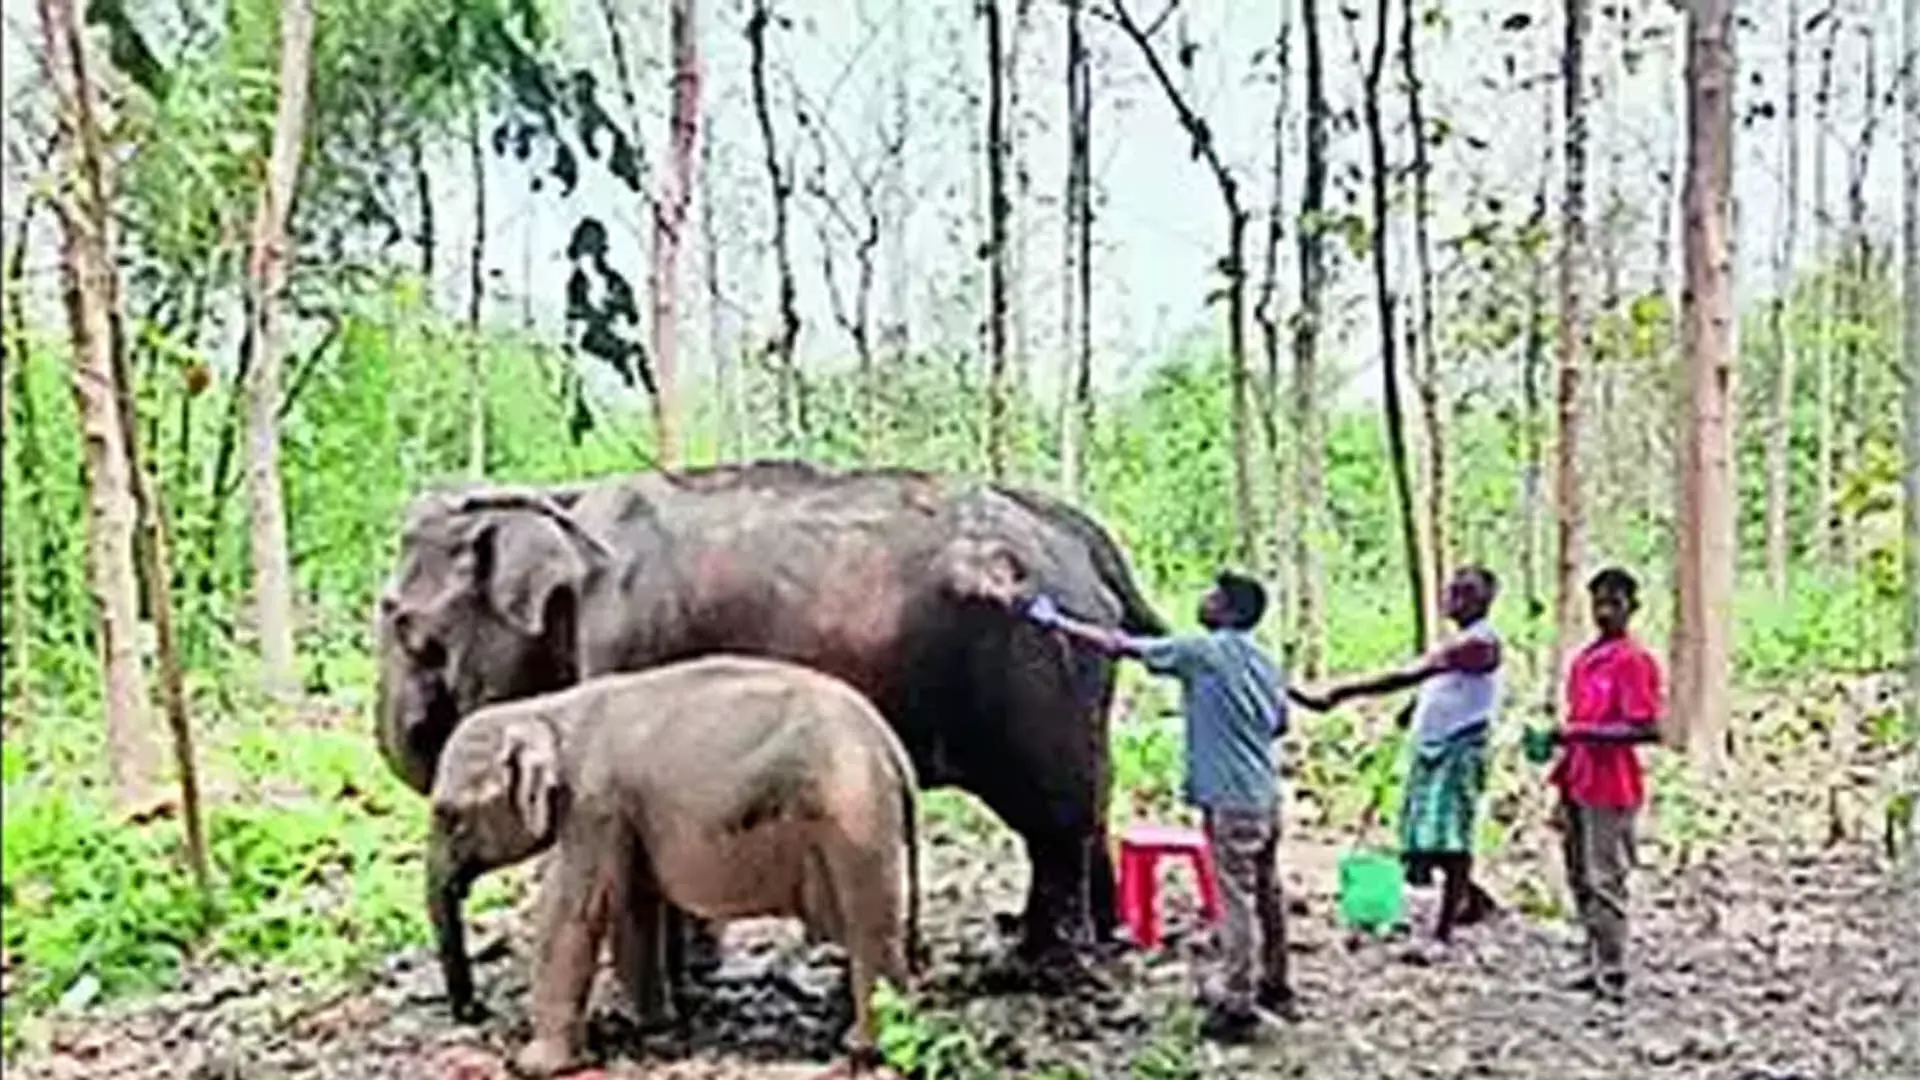 त्रिपुरा तीन जंगली जंबो पर रेडियो कॉलर लगाने का निर्णय लिया